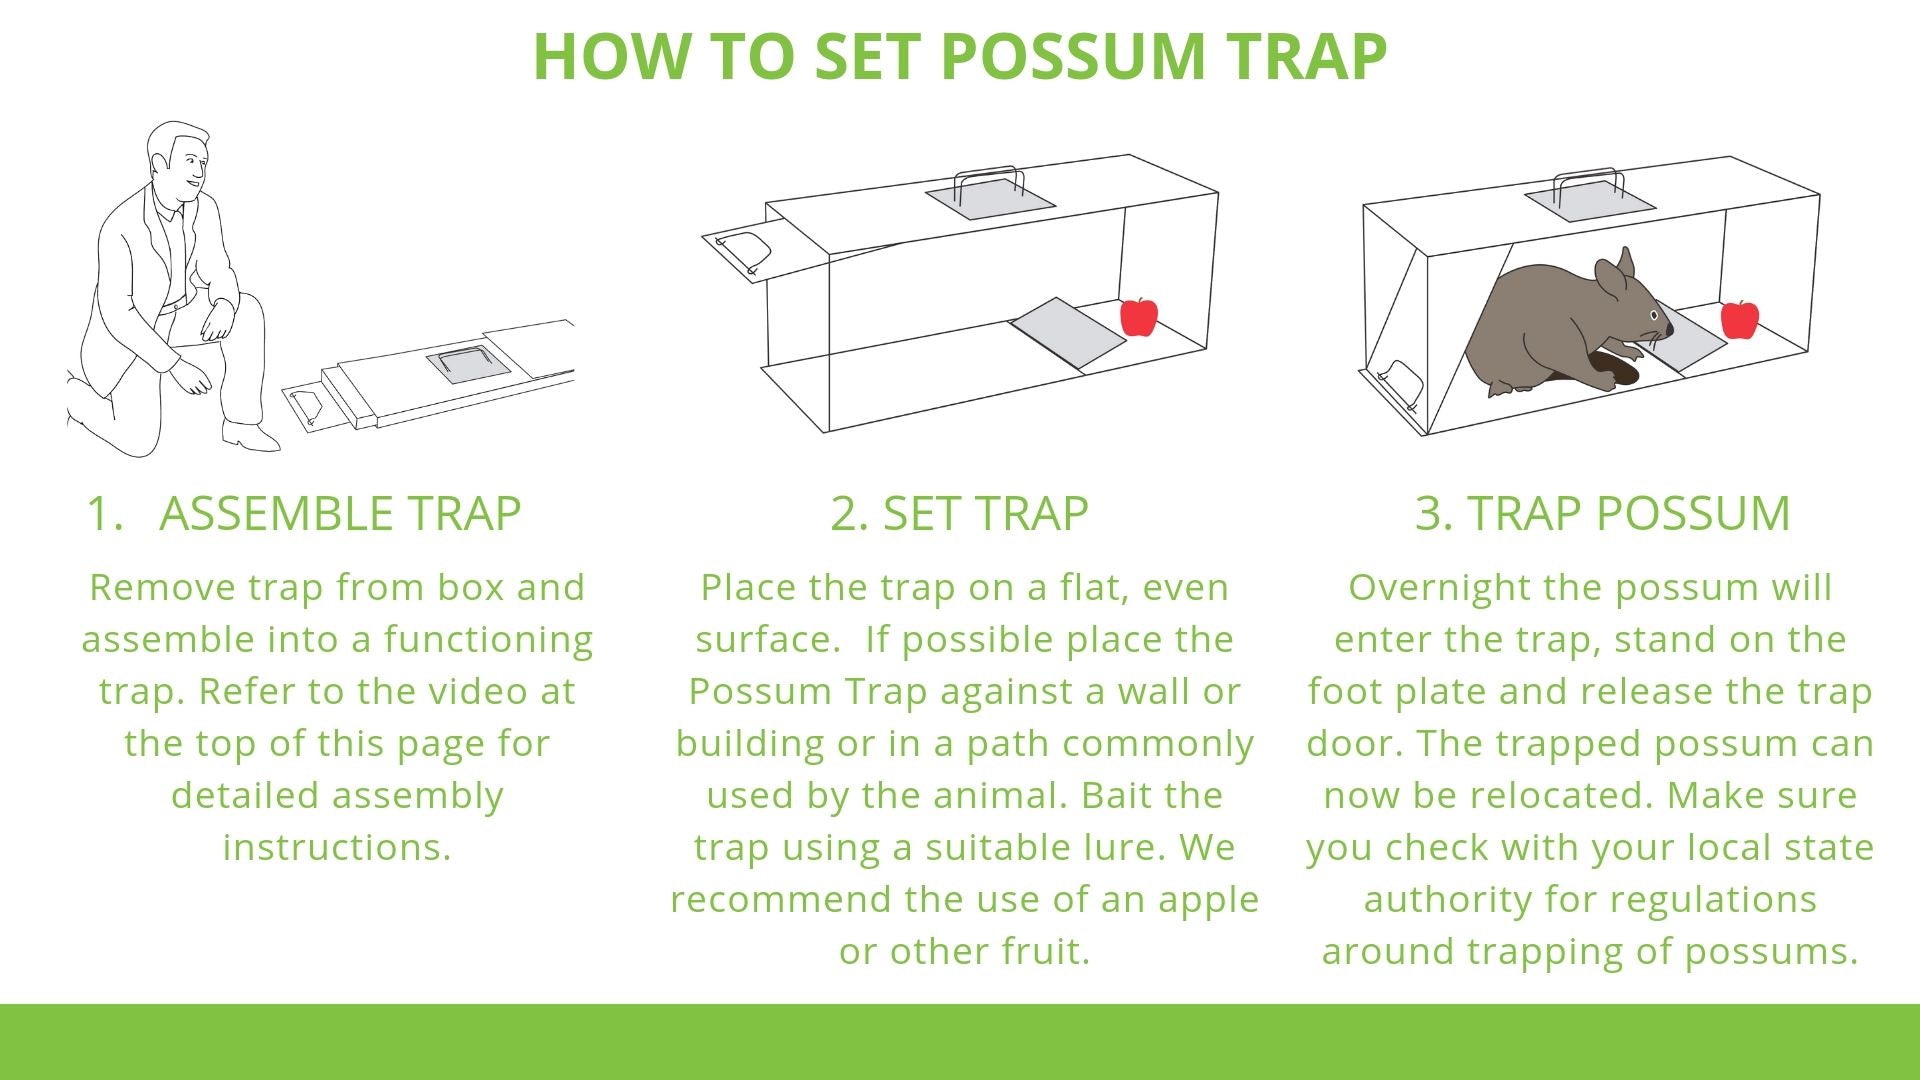 How to trap a possum